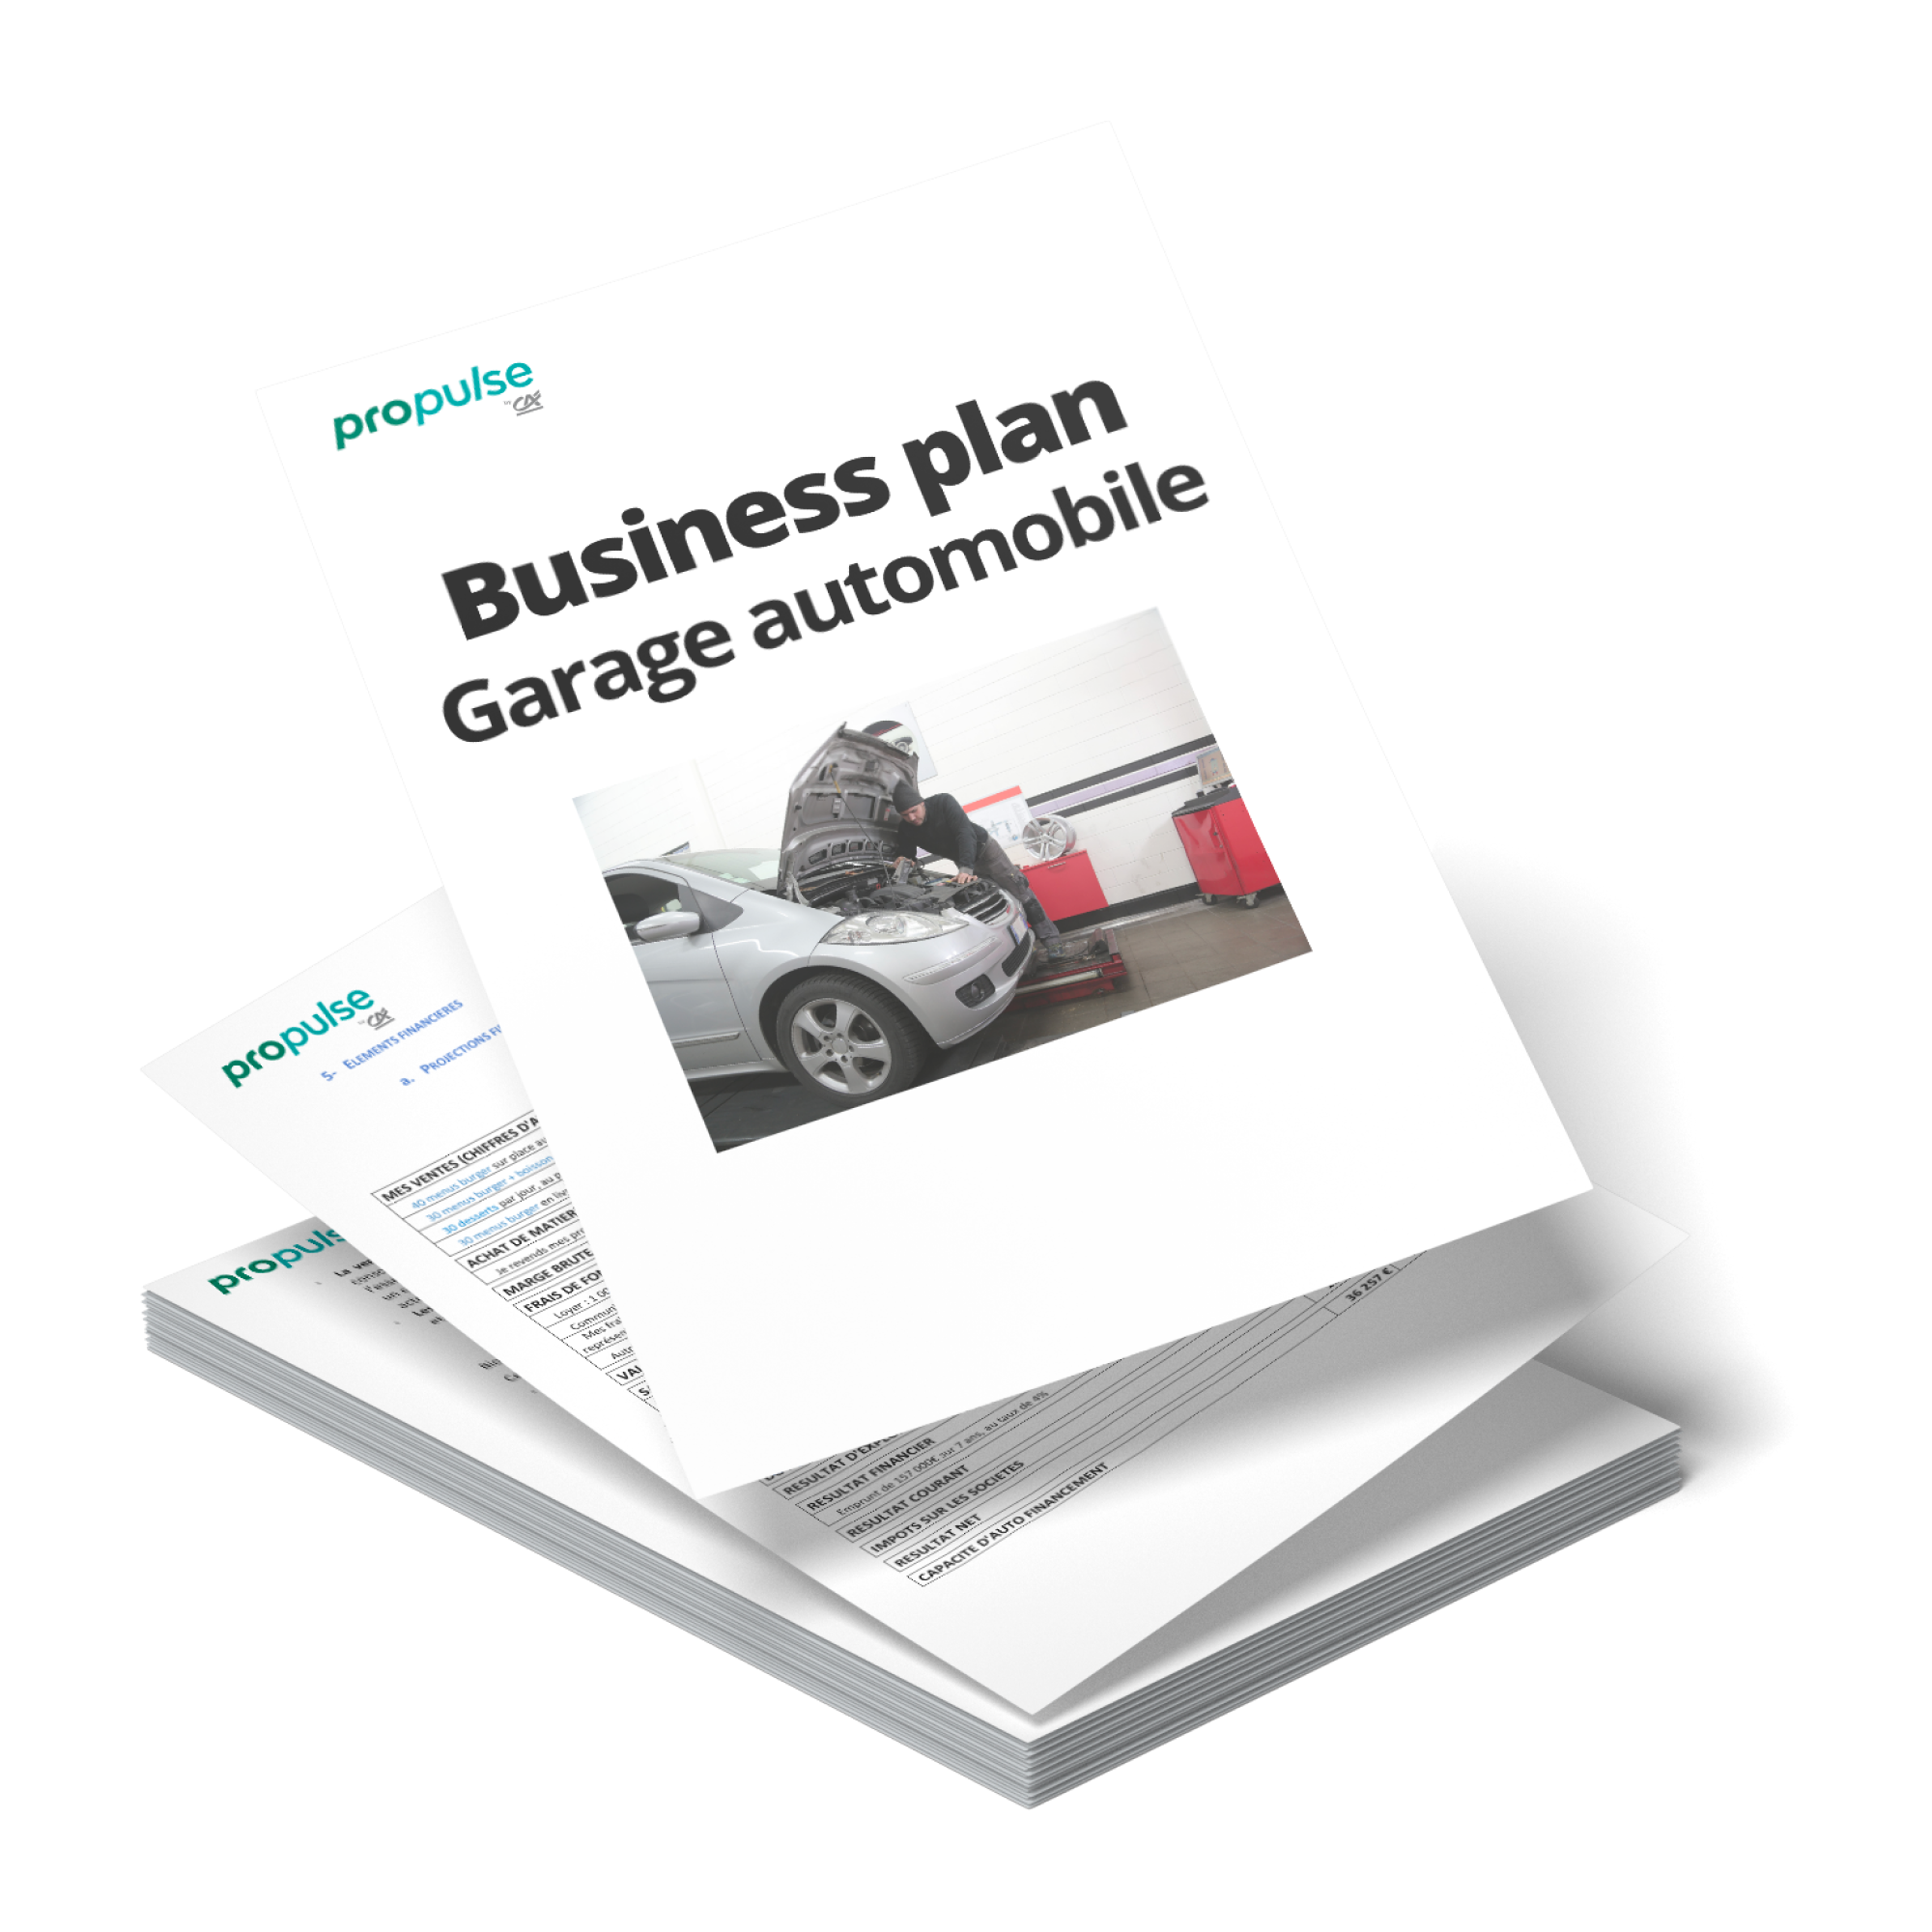 business plan garage pdf